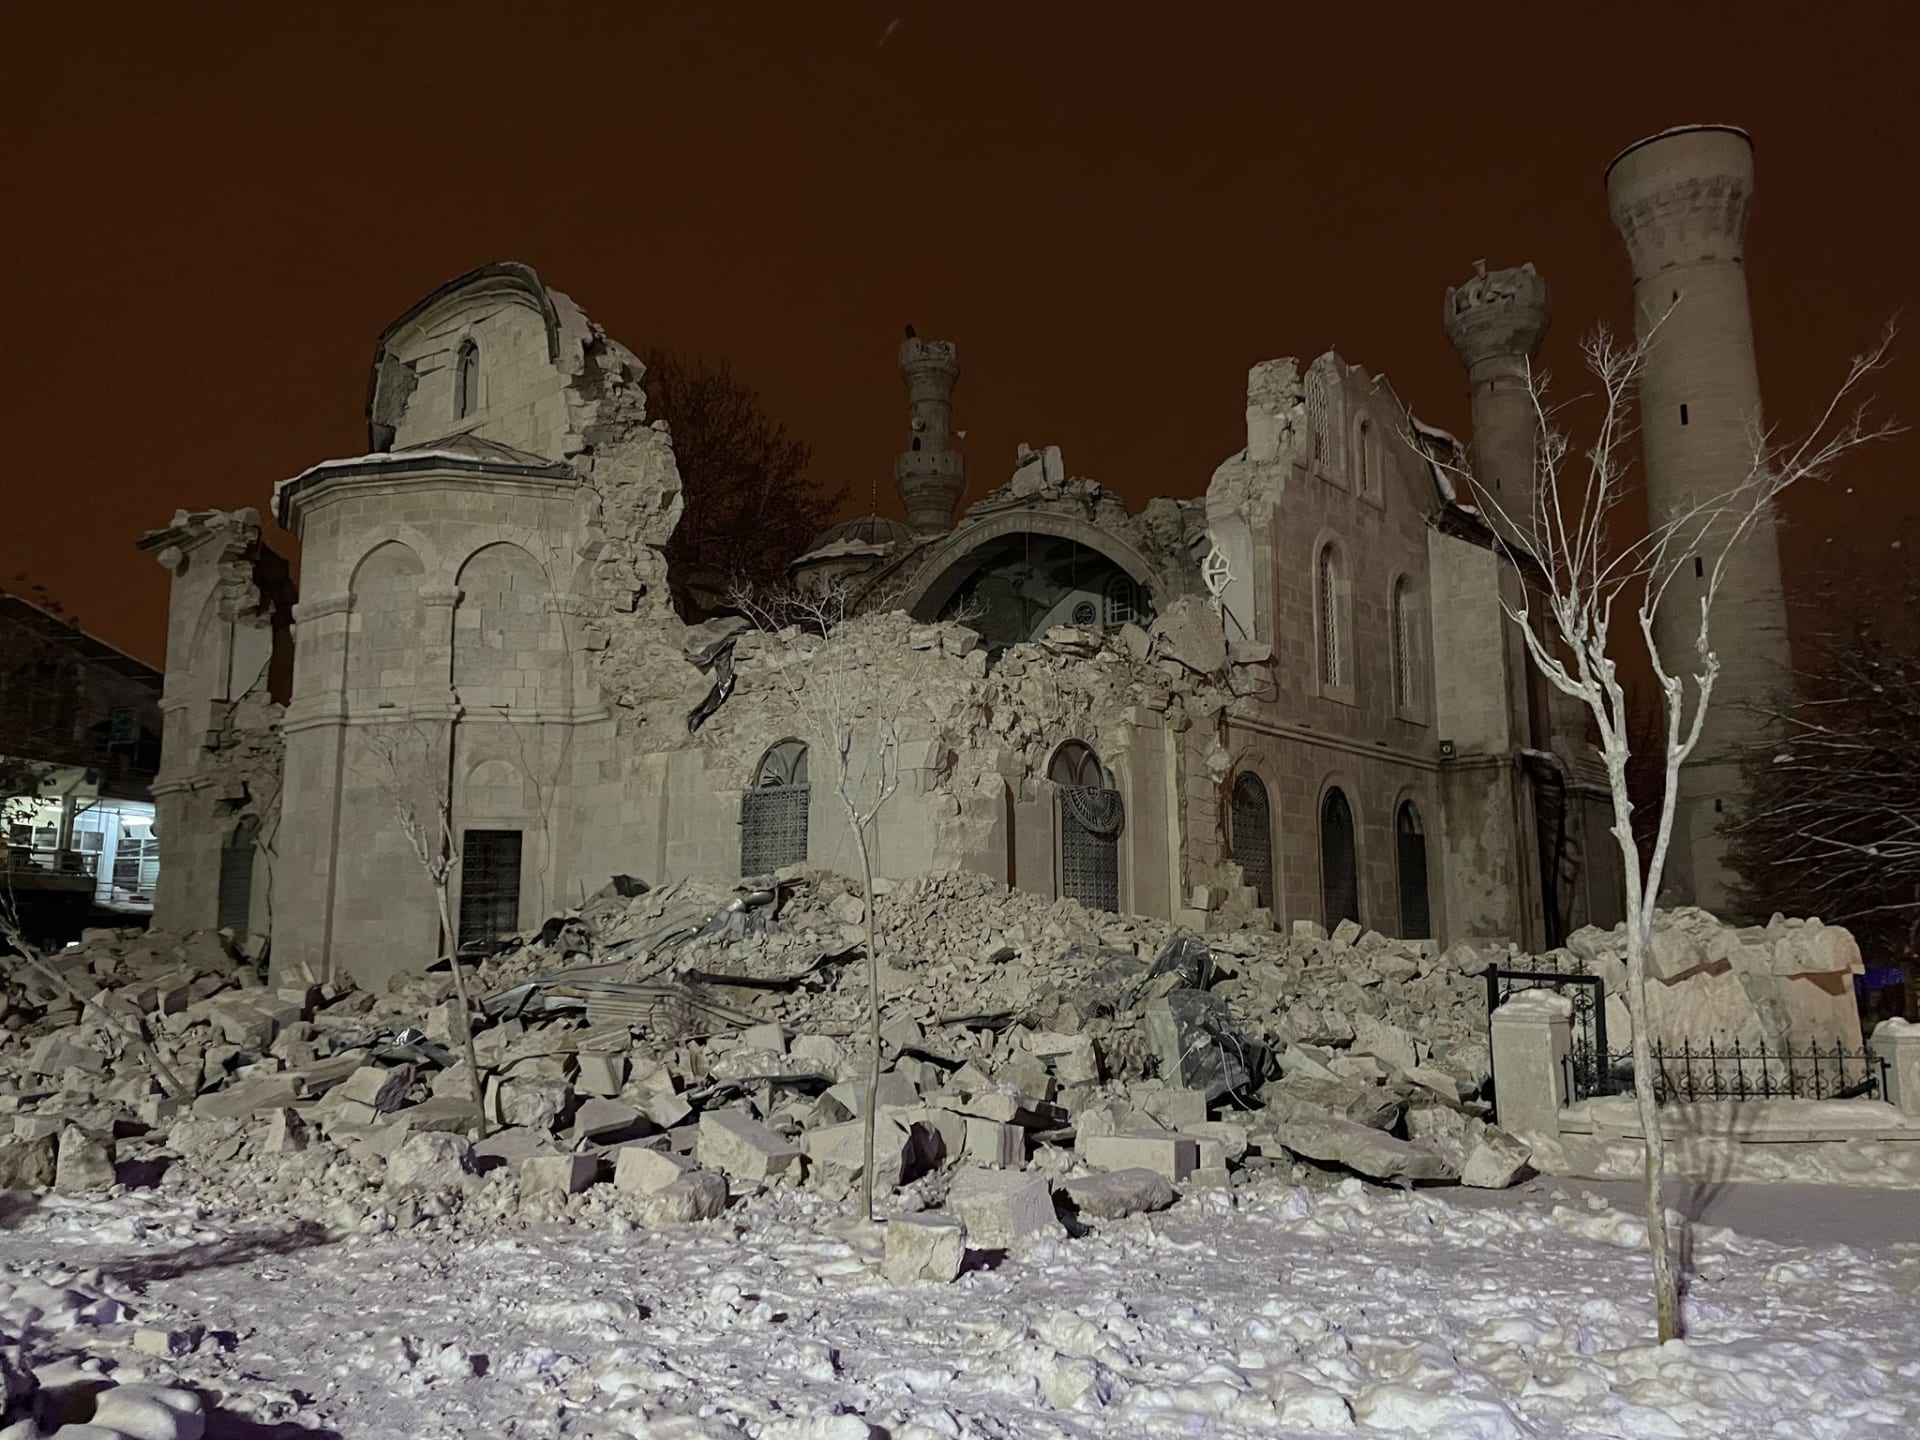 دمار كبير لحق بالمسجد بعد الزلزال 